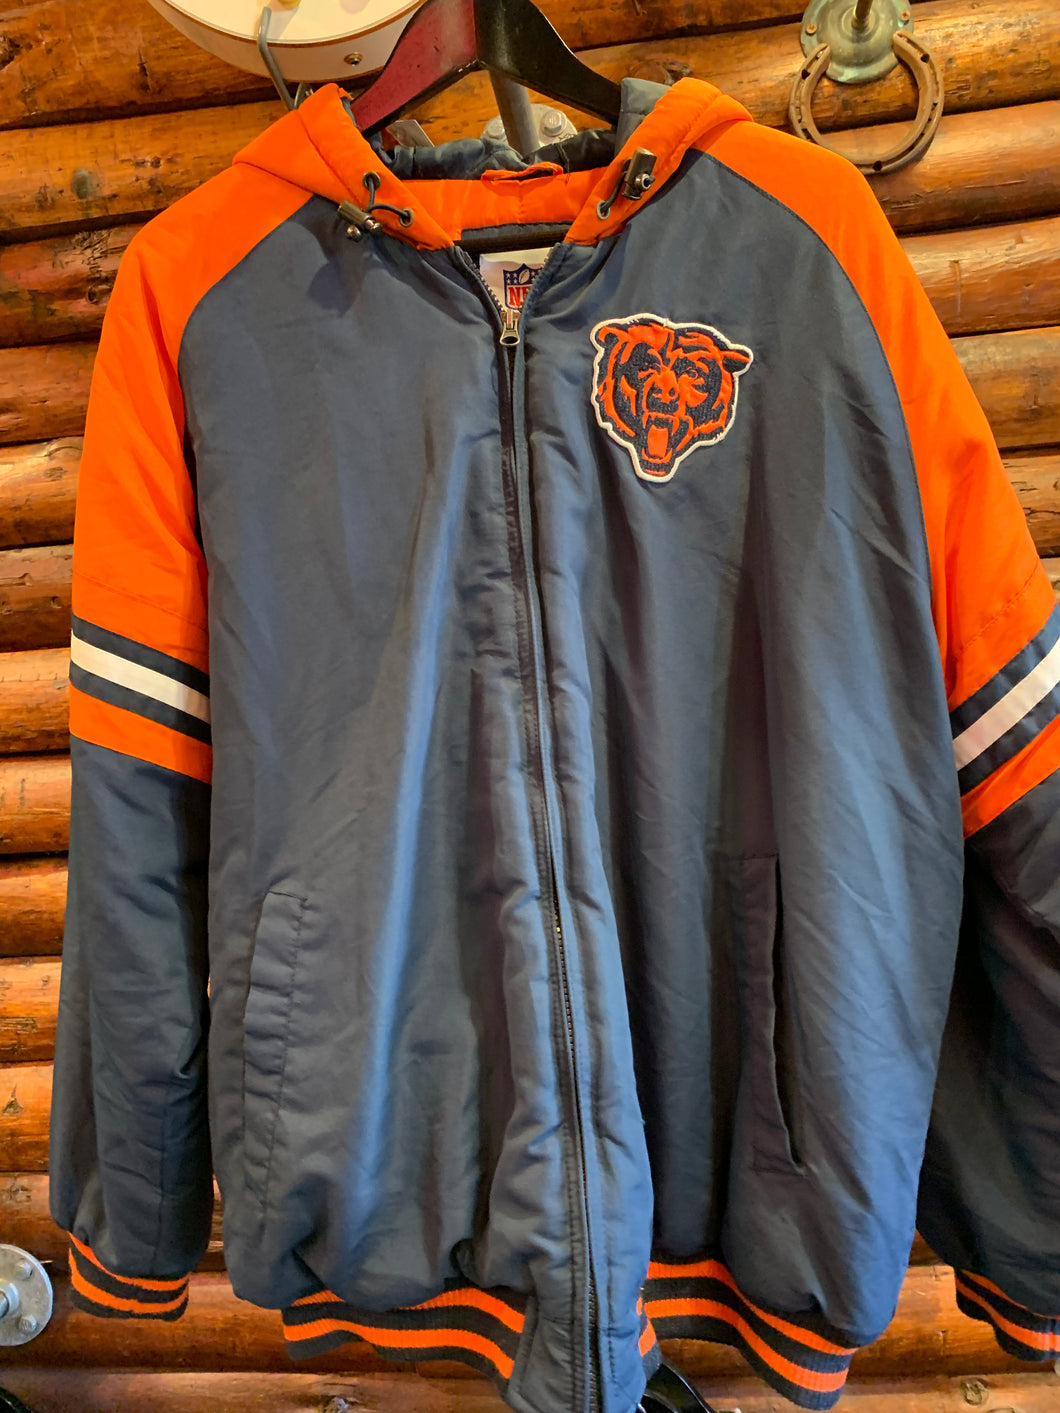 NFL Chicago Bears Vintage Jacket Large